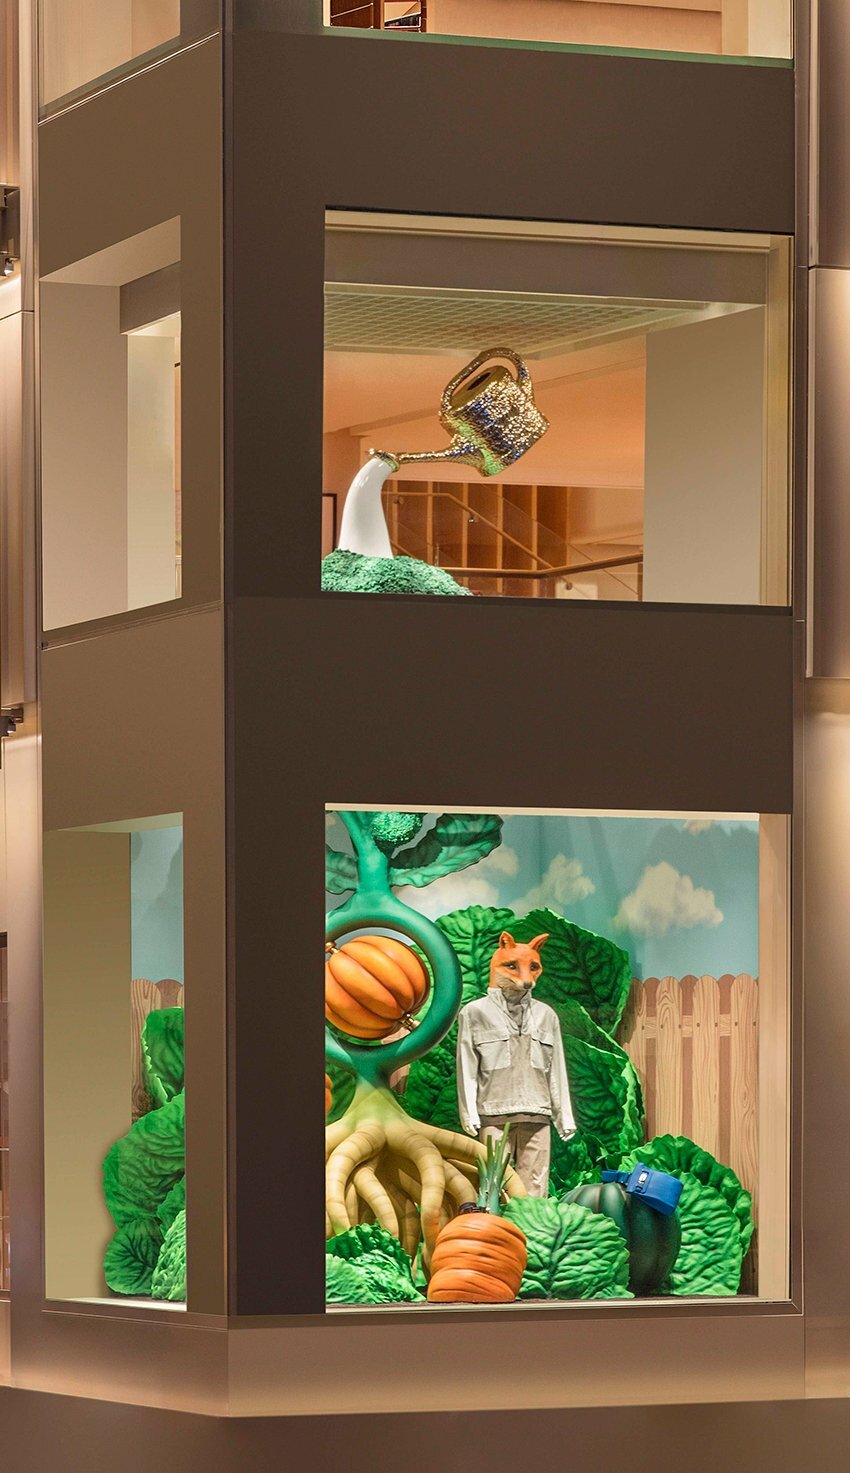 studio job sculpts maximalist window display for Hermès hong kong